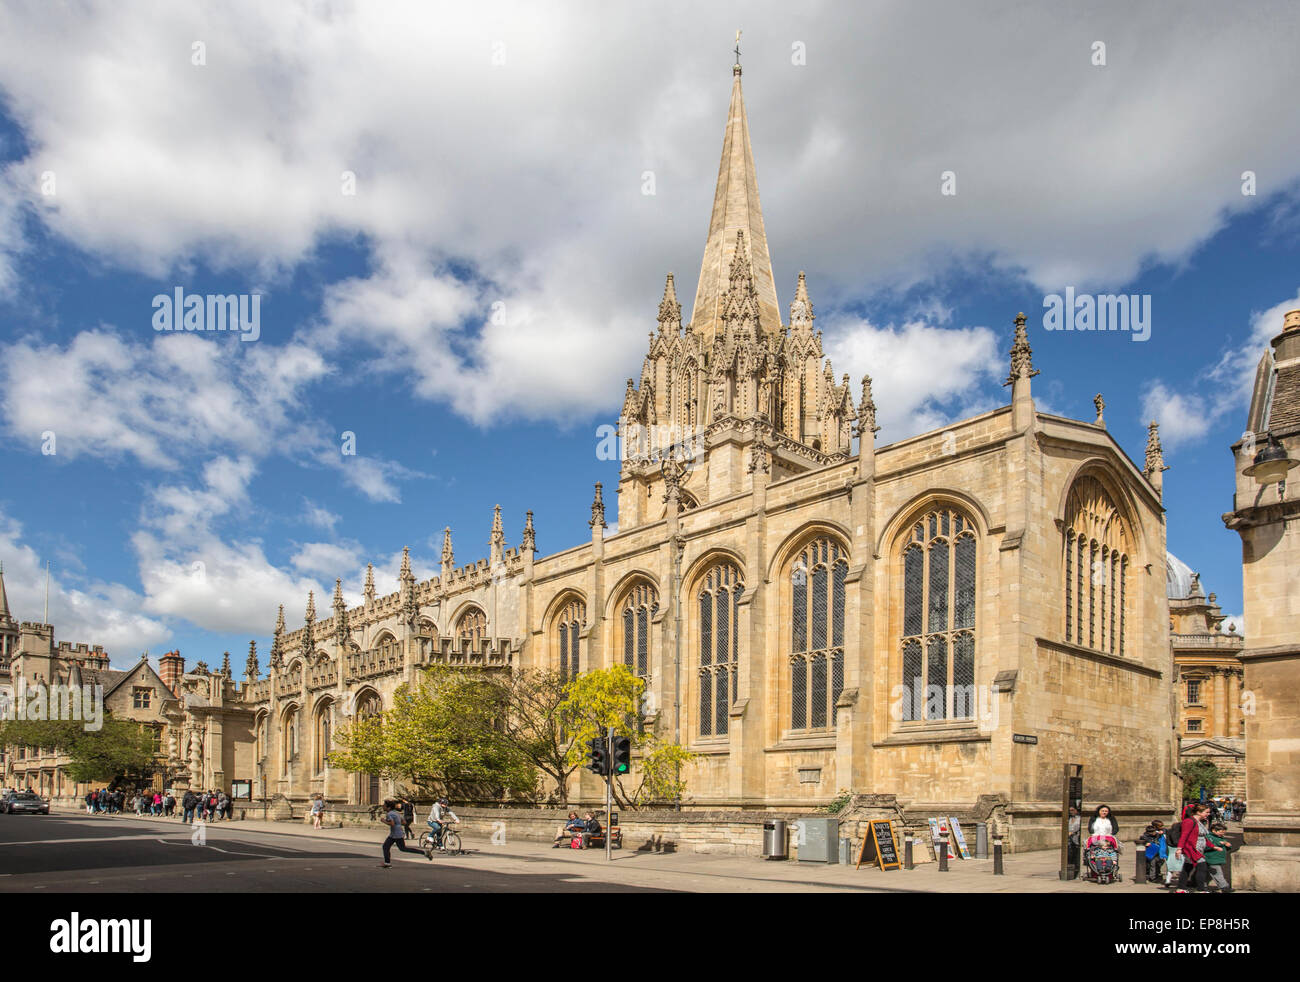 Zeigen Sie auf Universität Kirche von Str. Mary die Jungfrau (Str. Marys oder SMV kurz) auf High Street oder "The High", Oxford, UK an. Stockfoto